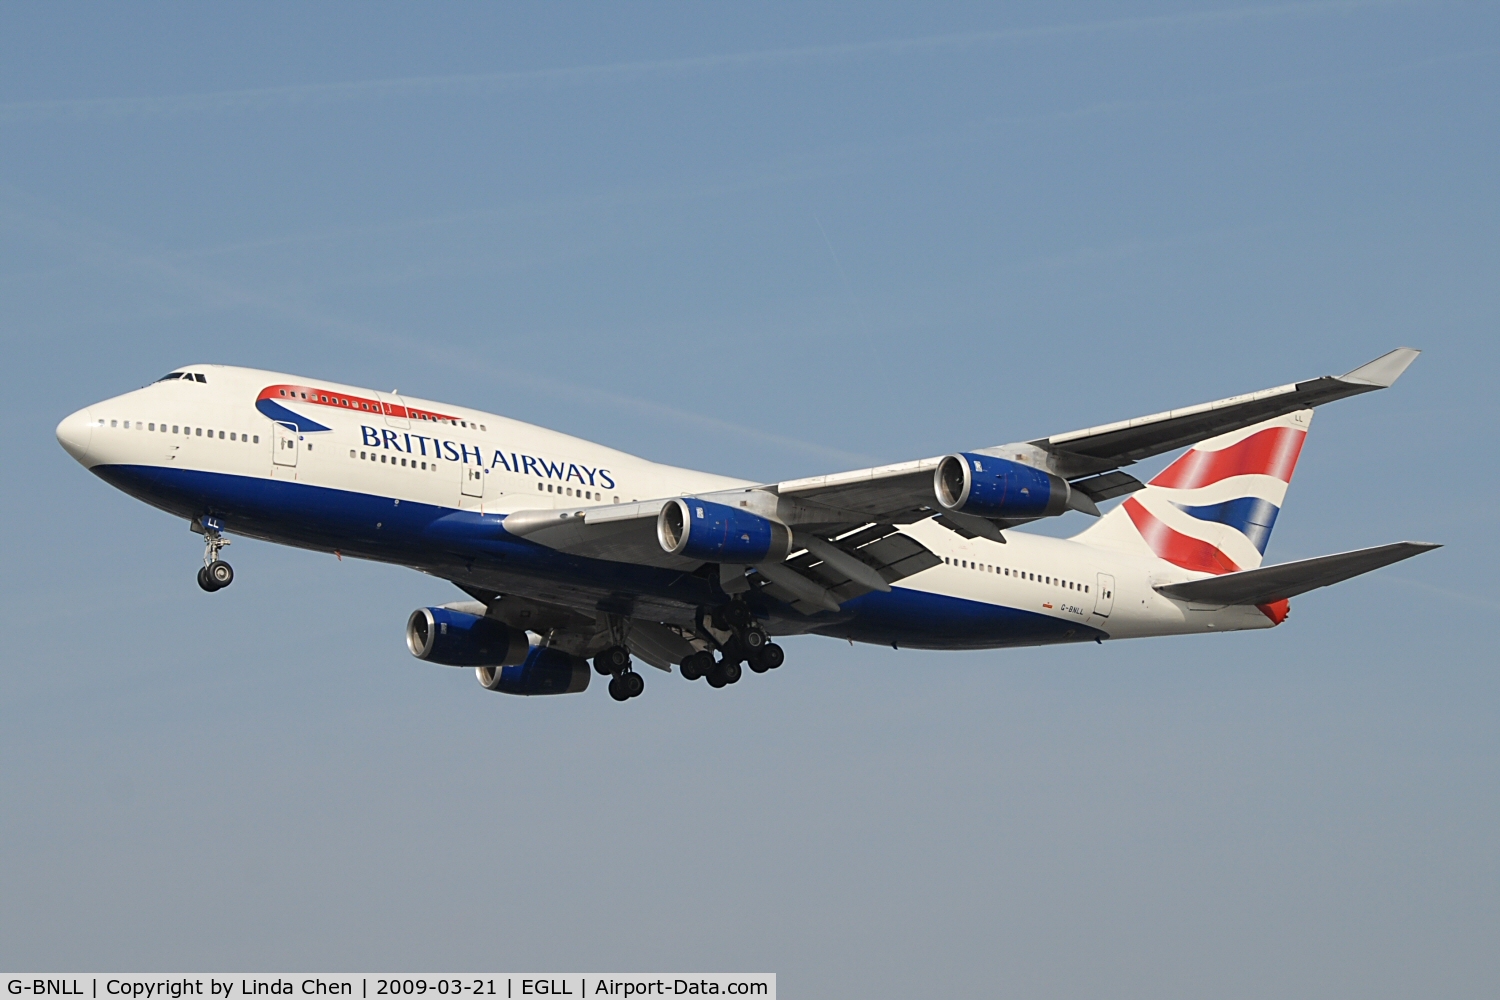 G-BNLL, 1990 Boeing 747-436 C/N 24054, British Airways B747-400